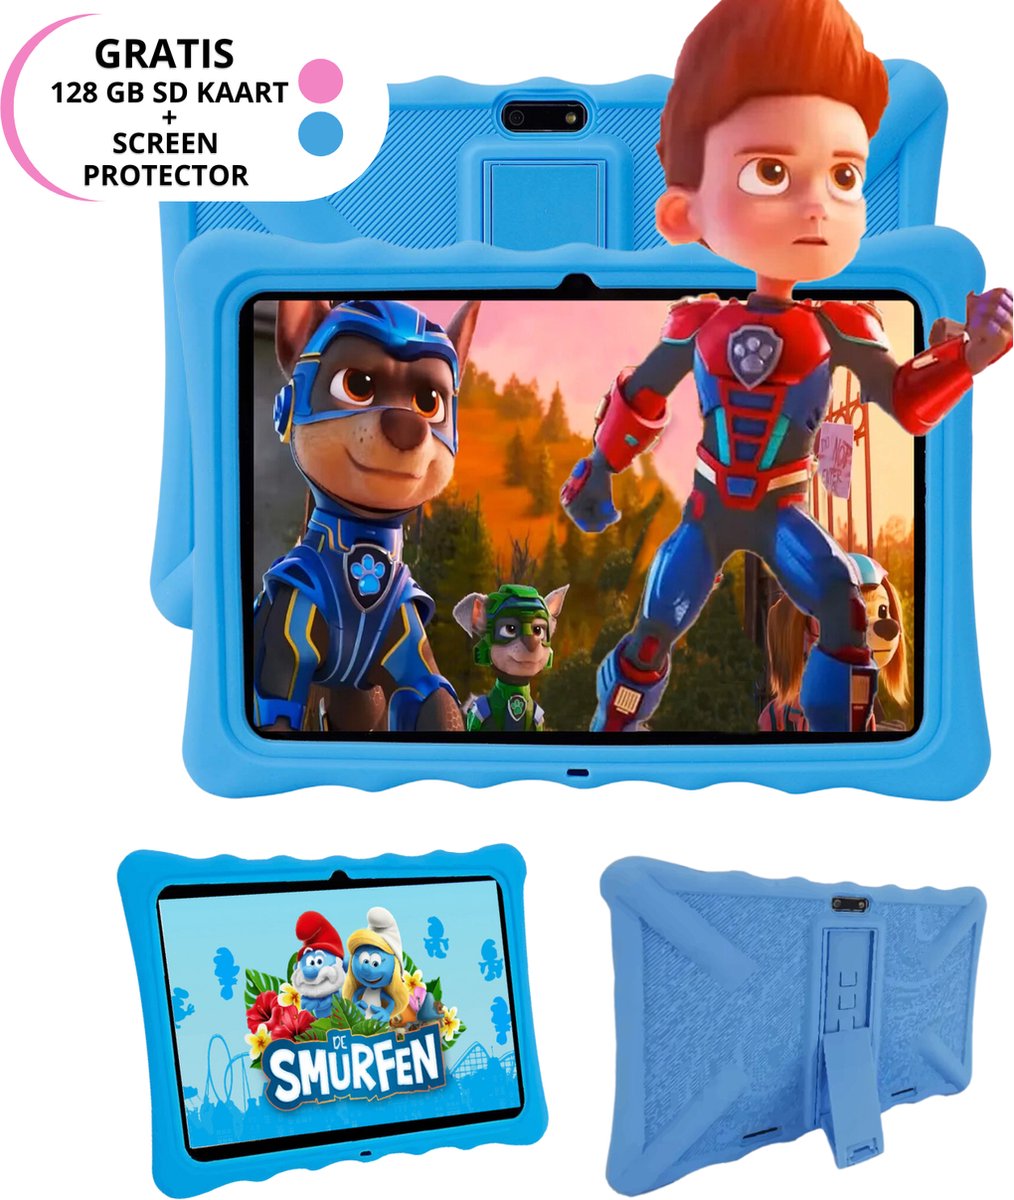 Zentek - Kindertablet vanaf 3 jaar- Ouderlijk Toezicht - Full HD Scherm - 10 inch Android Tablet - 100%Kidsproof - Incl 128GB SD-kaart + screenprotector en beschermhoes – Roze of Blauw